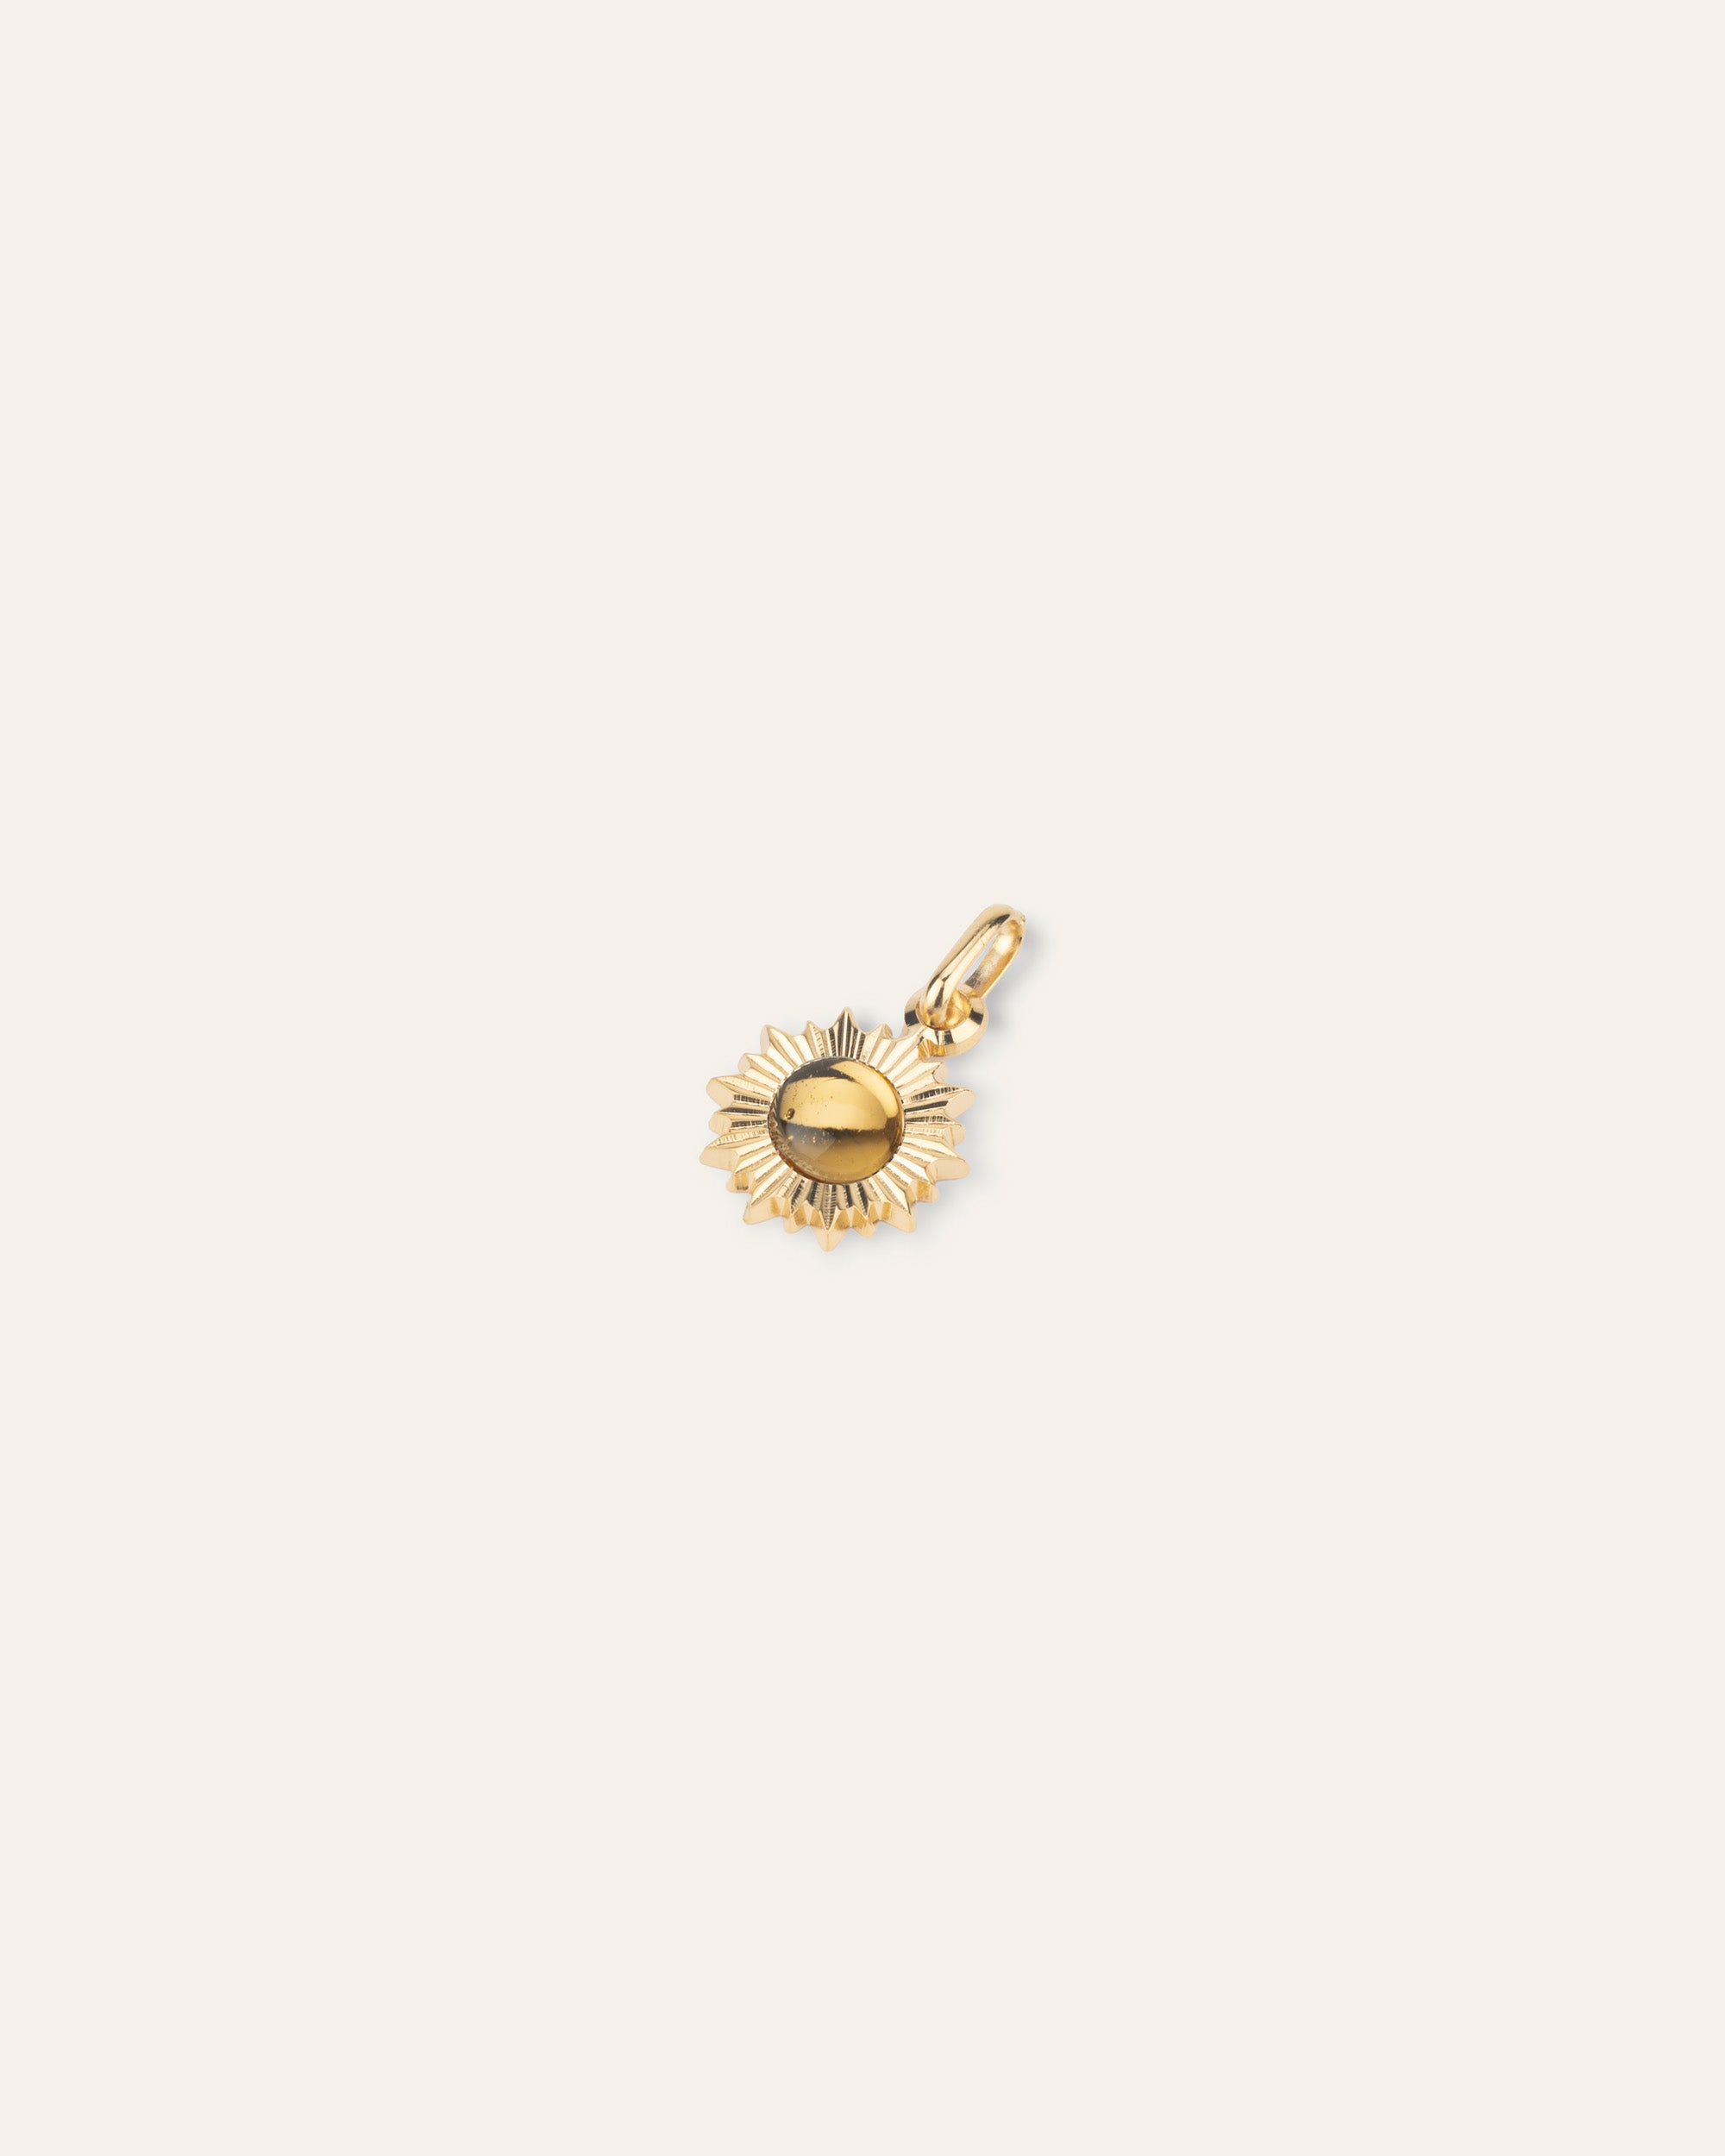 Ilios gold and citrine pendant